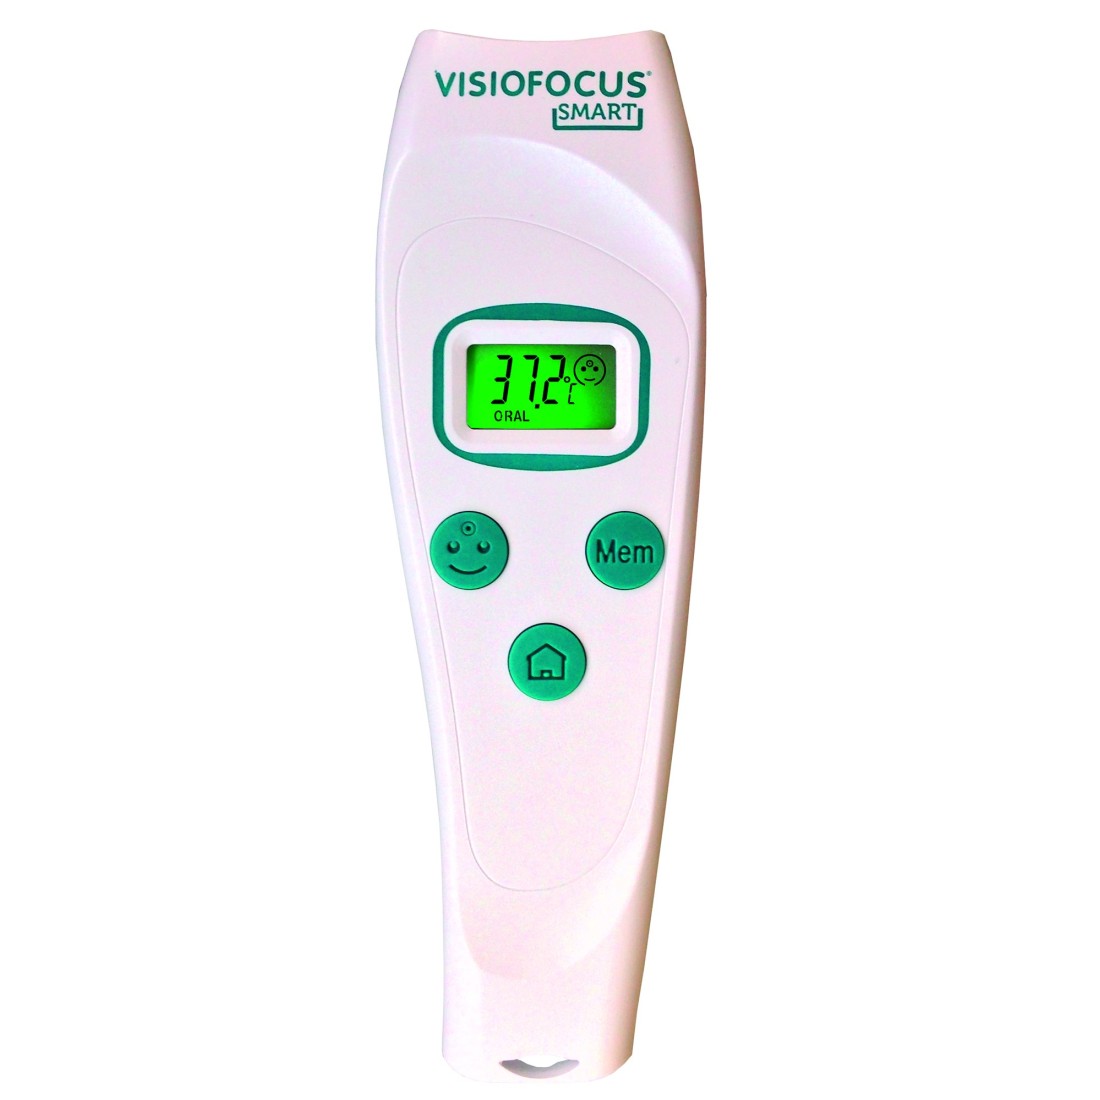 Thermomètre sans contact infrarouge Urgo